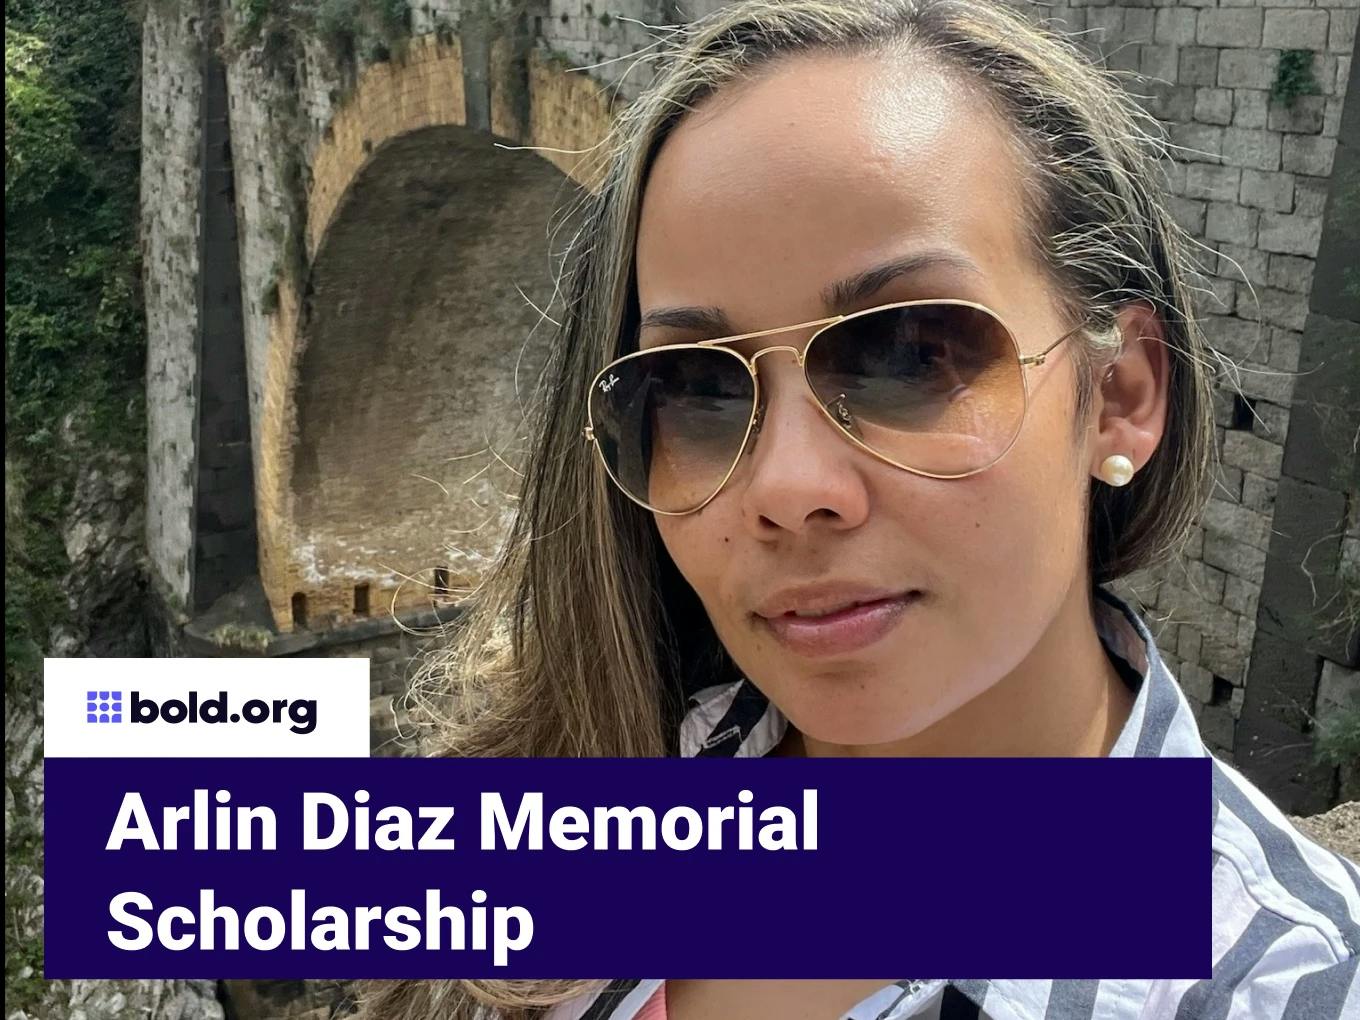 Arlin Diaz Memorial Scholarship